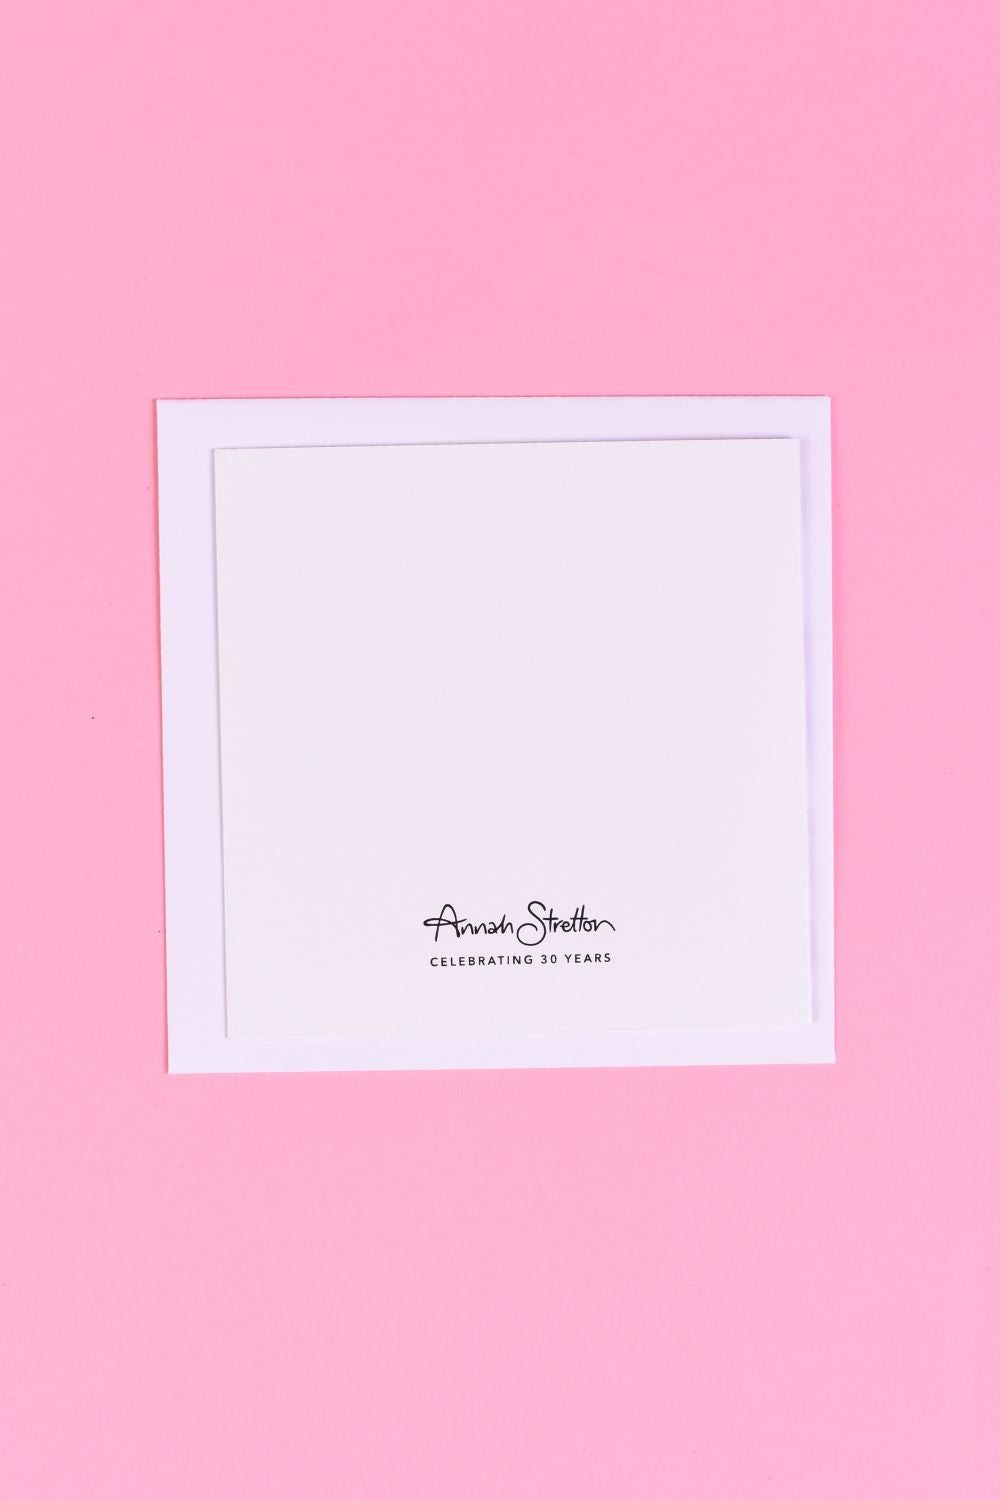 AS Blank Gift Card - Dahlia